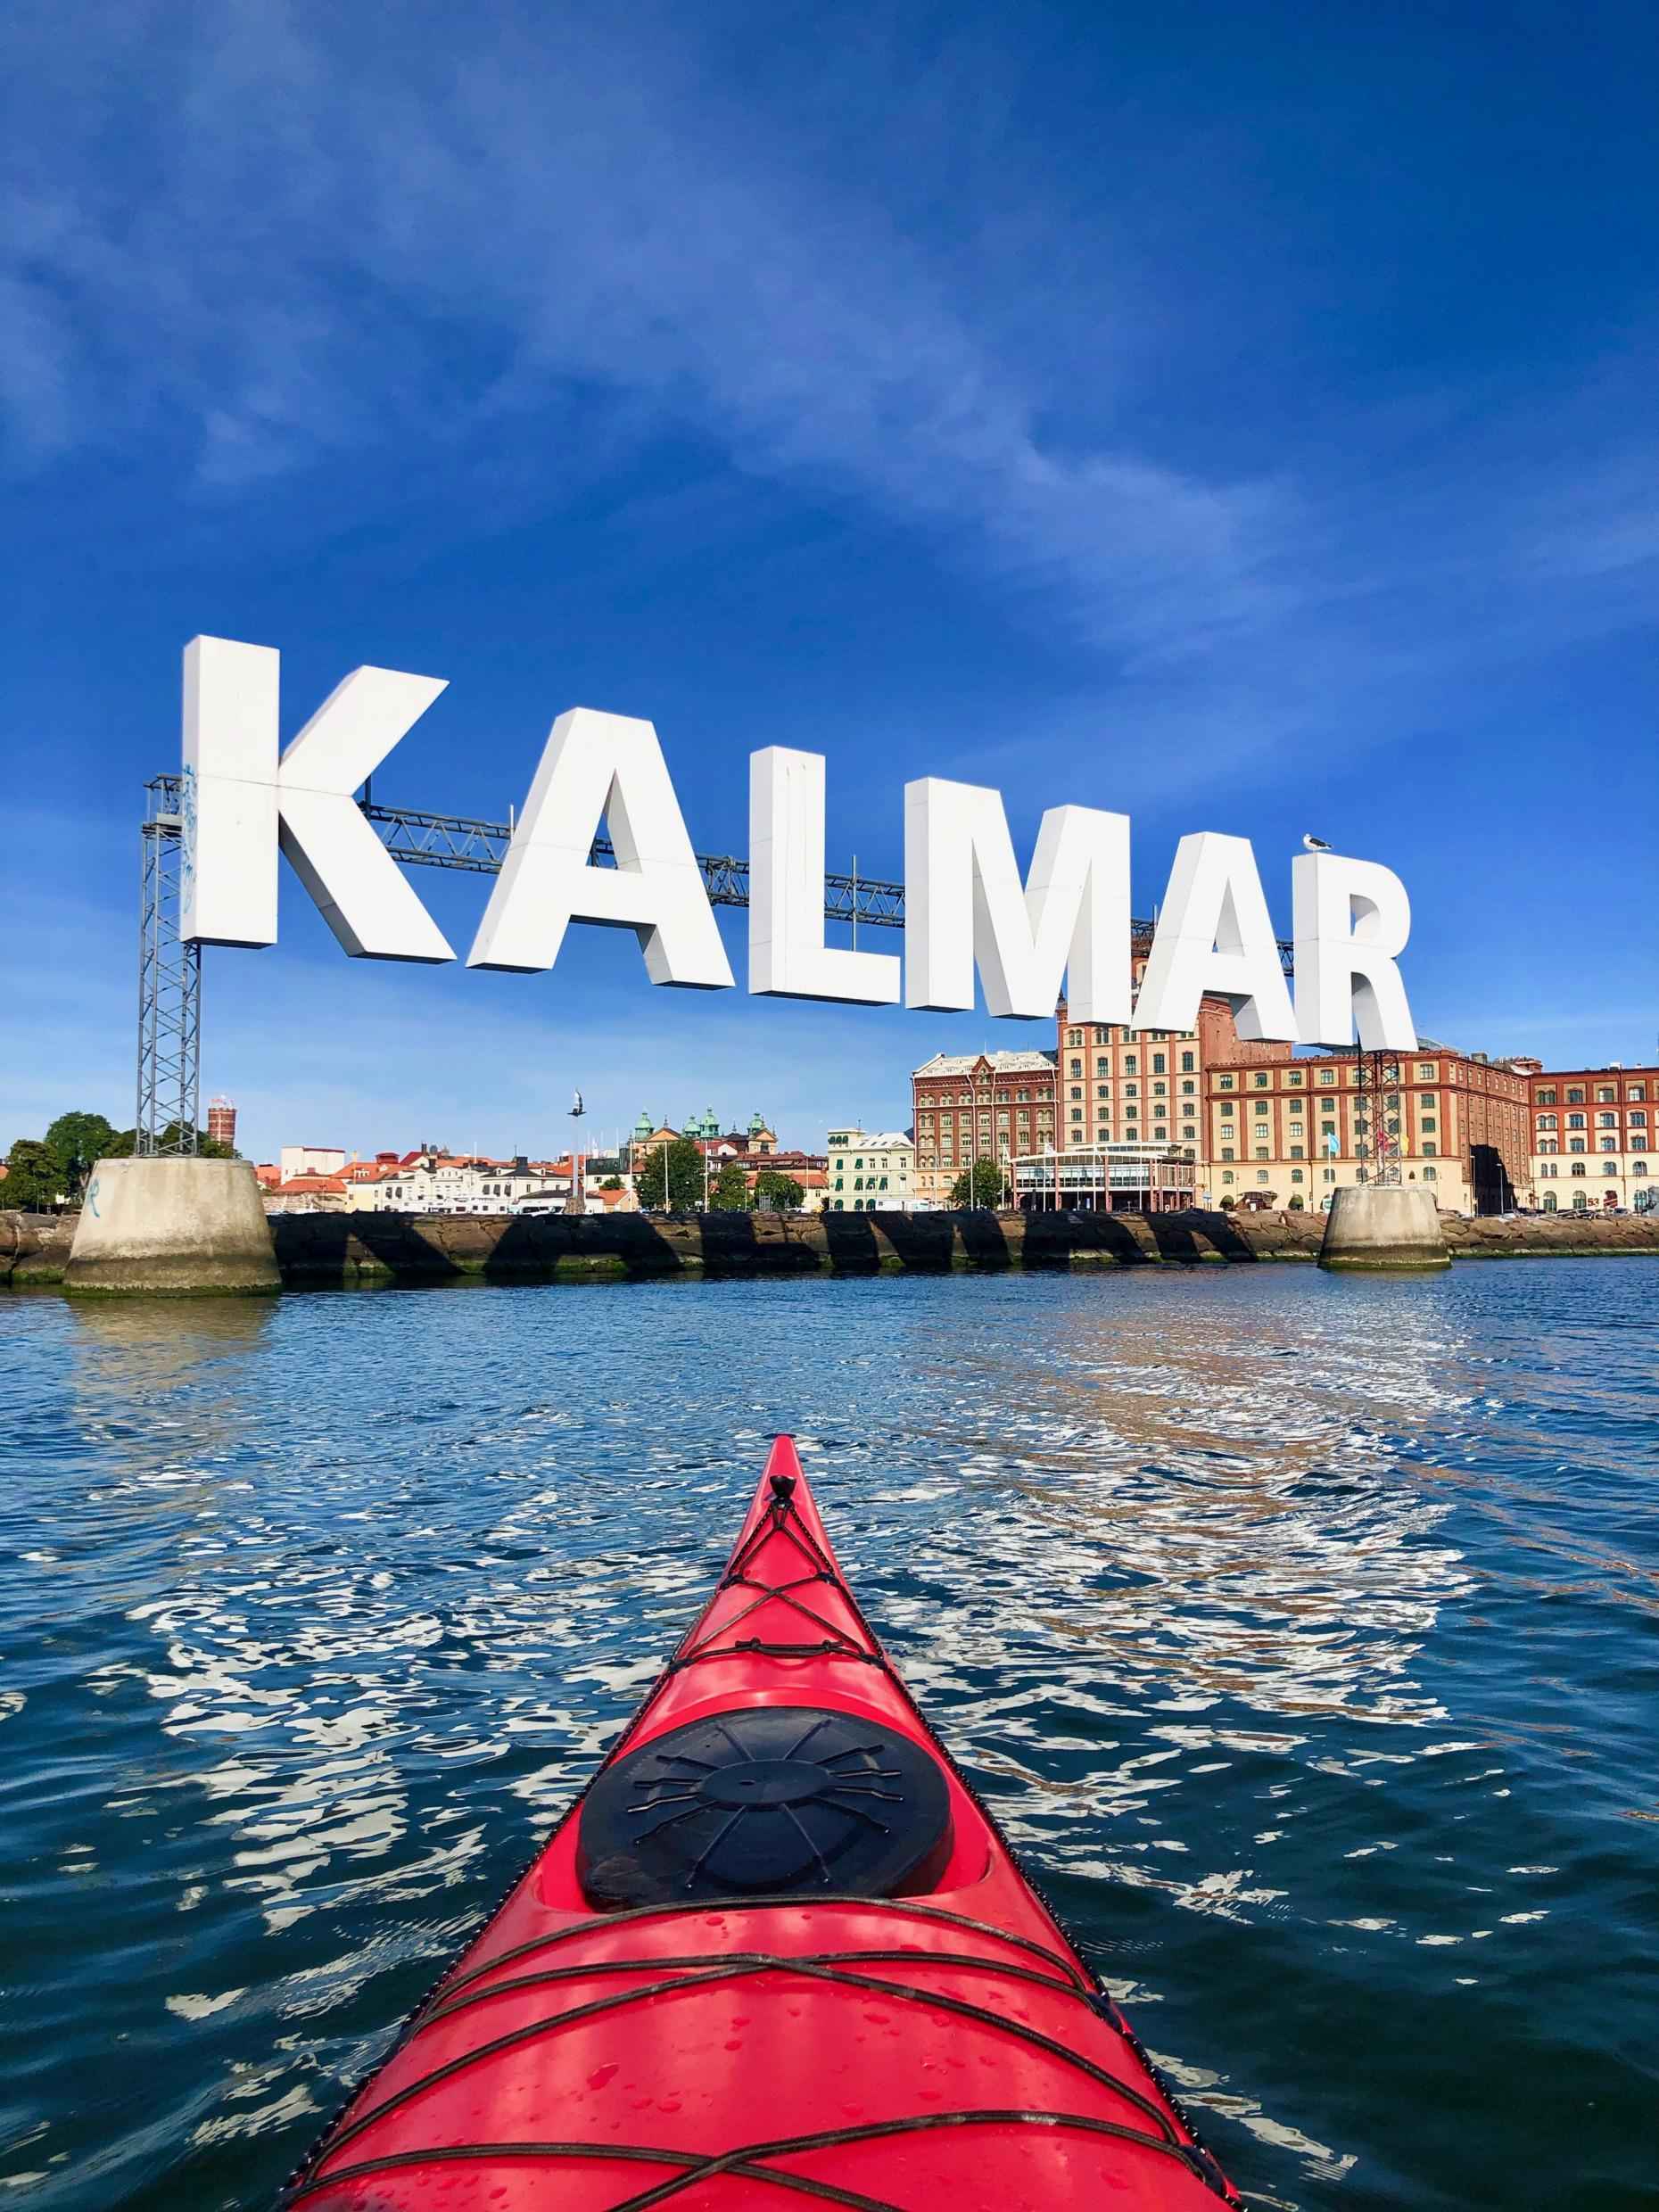 Ein großes Schild mit der Aufschrift KALMAR lädt dich in die Stadt ein. Die Vorderseite eines Kajaks auf dem Wasser auf dem Weg ins Zentrum.